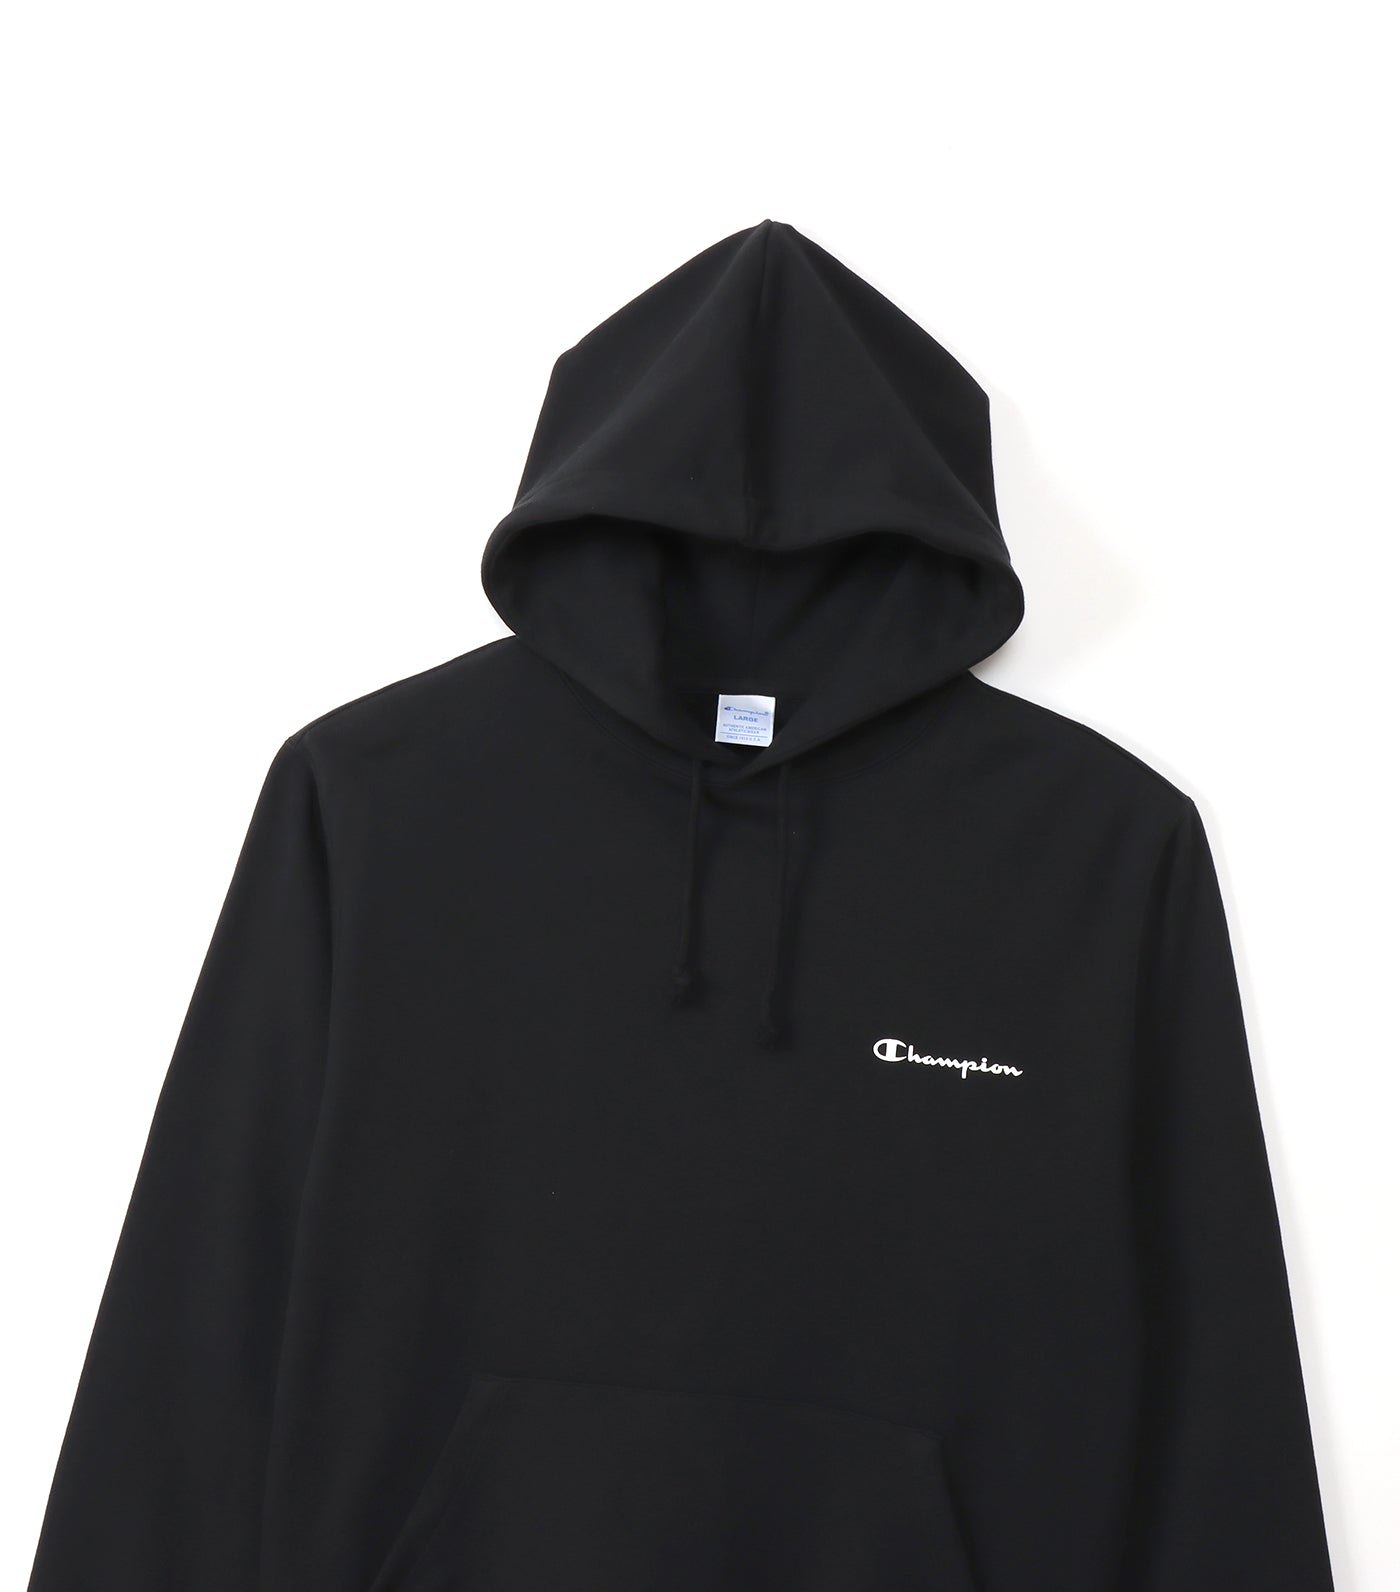 Japan Line Hooded Sweatshirt Black